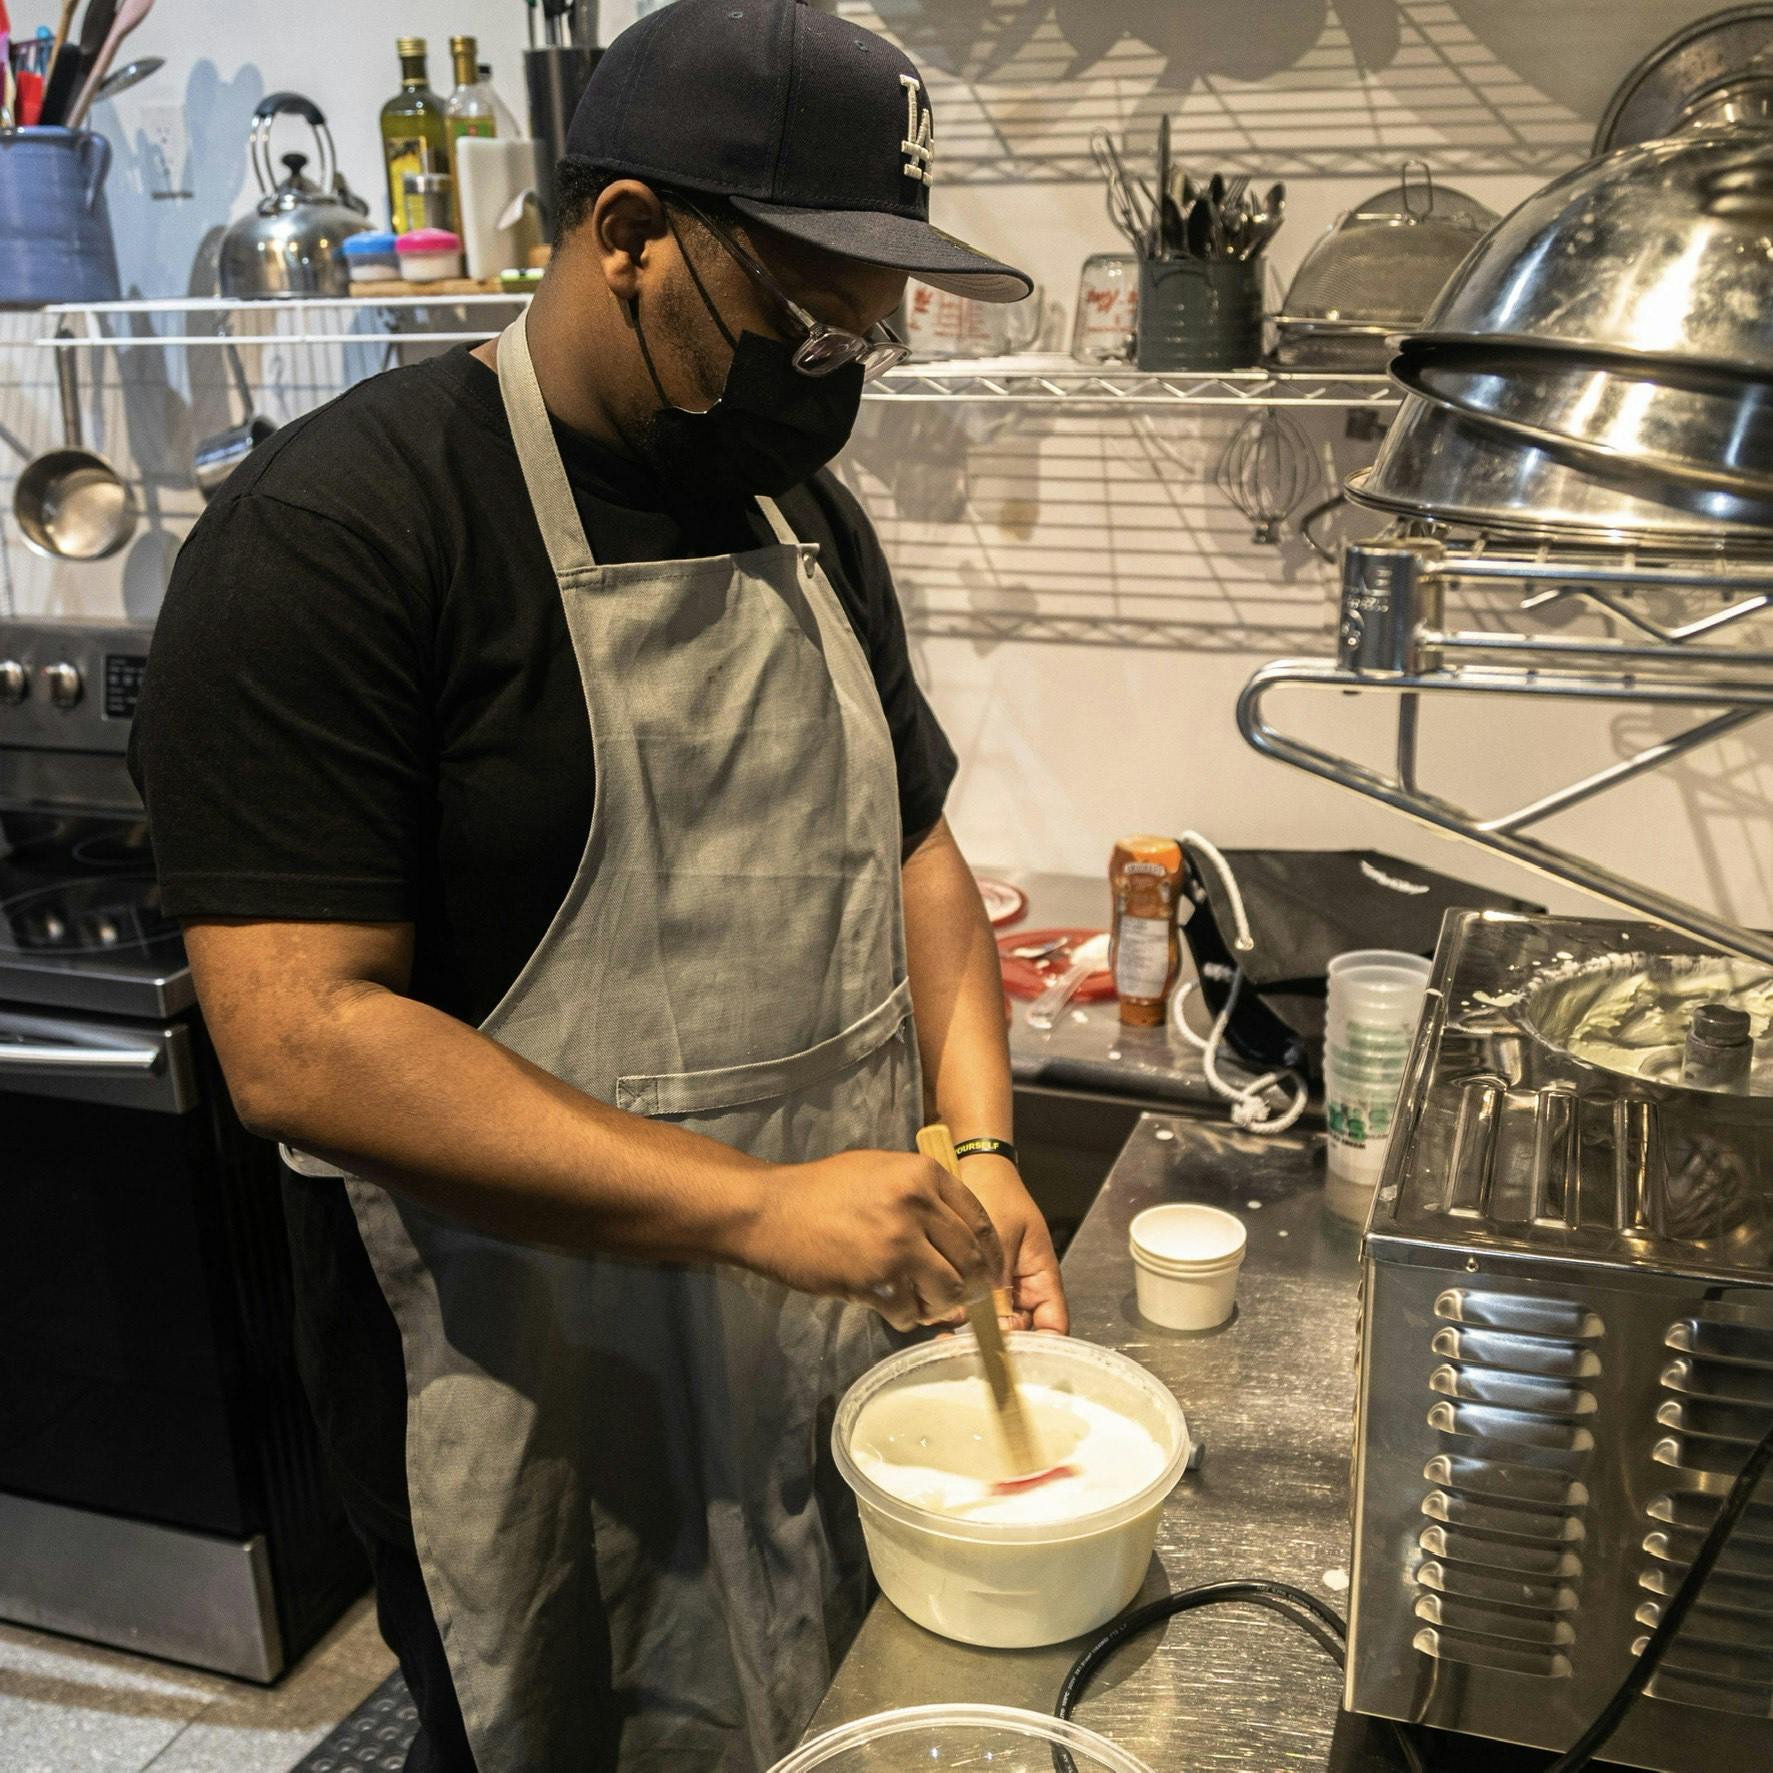 Owner Abdul Ali, "Rex" making ice cream